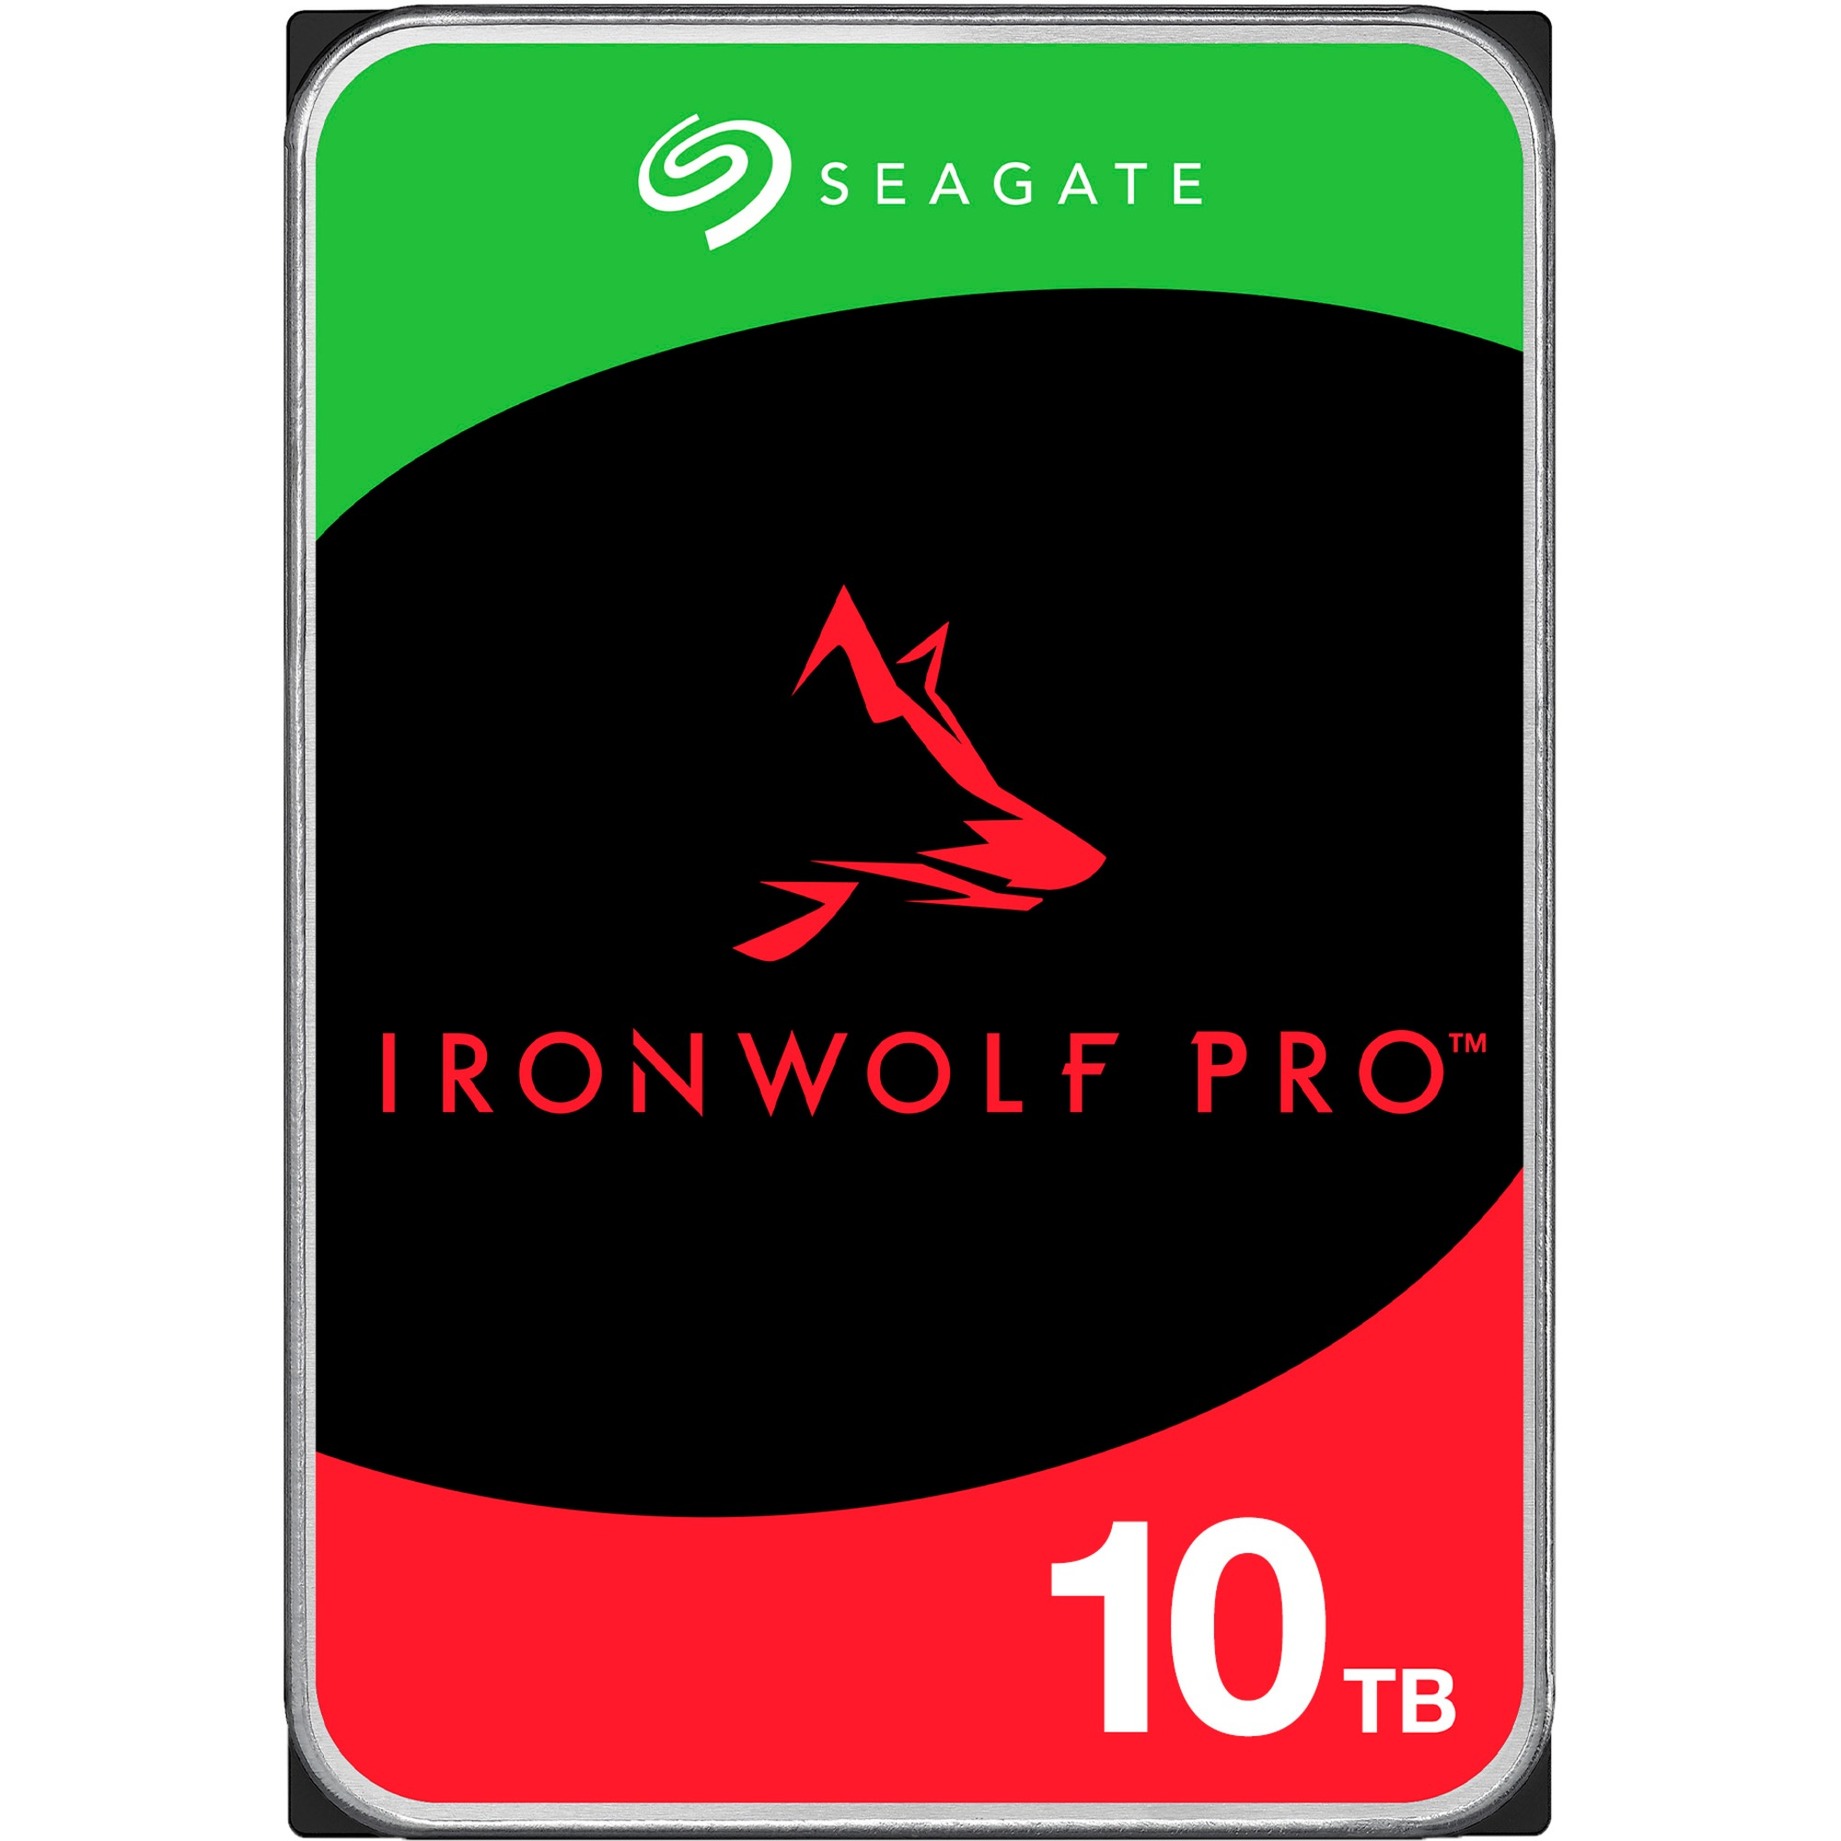 IronWolf Pro NAS 10 TB CMR, Festplatte von Seagate